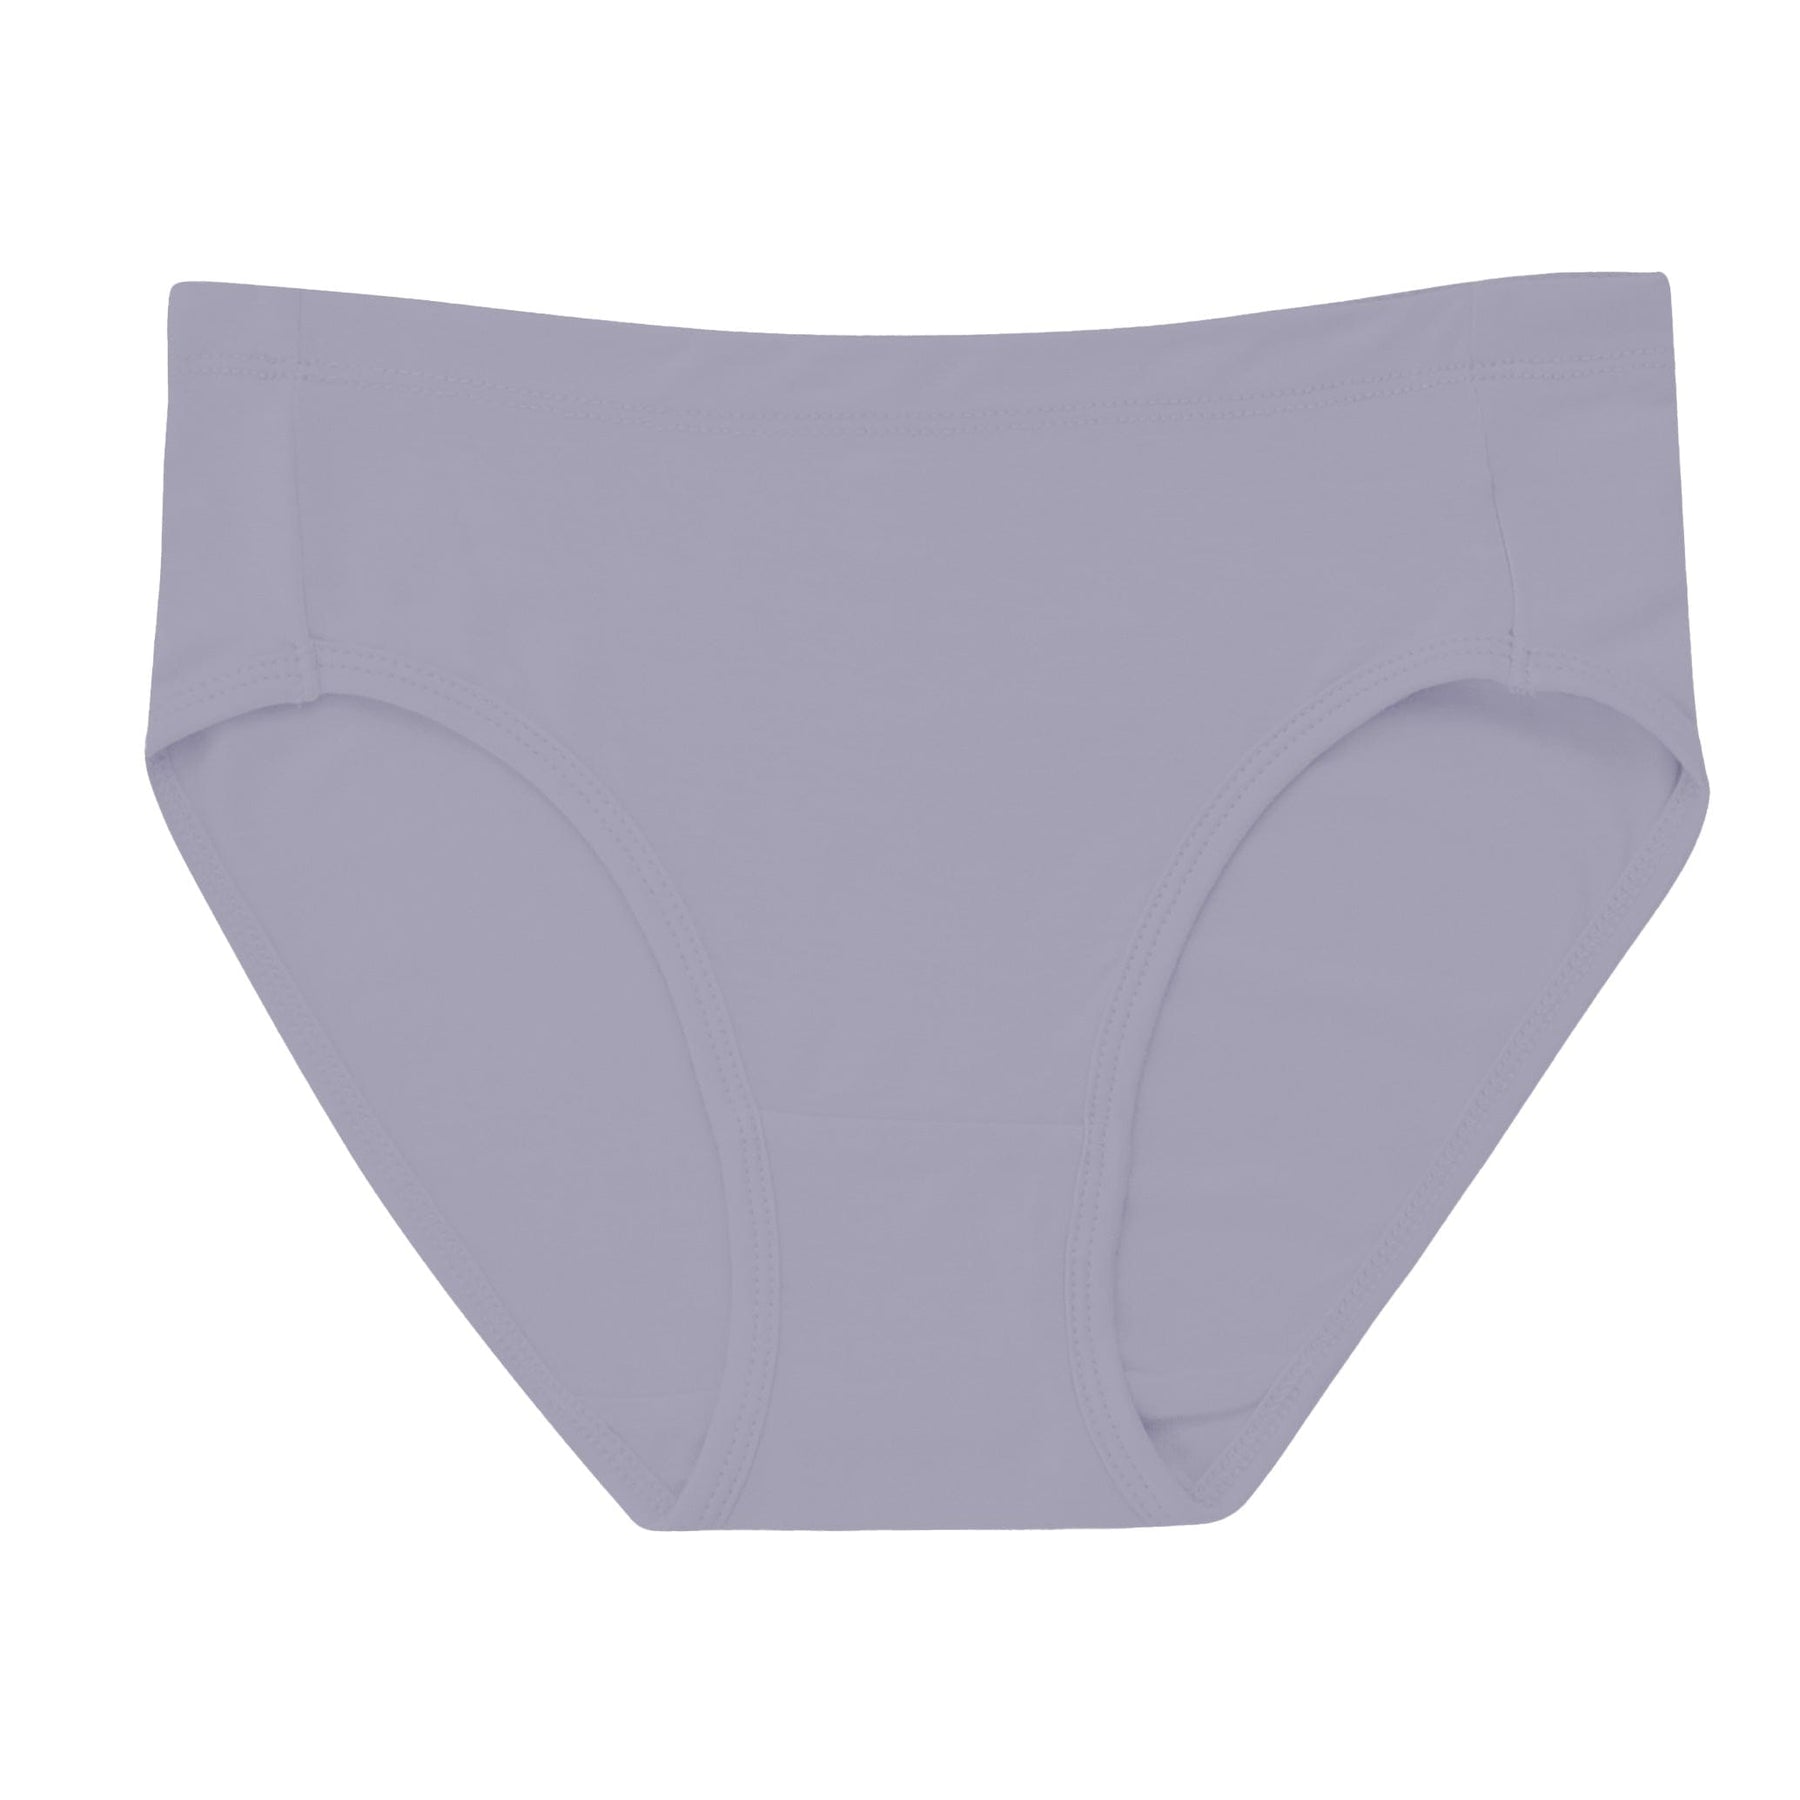 https://kytebaby.com/cdn/shop/files/kyte-baby-women-s-underwear-women-s-underwear-in-haze-32500120060015_1800x.jpg?v=1705824073